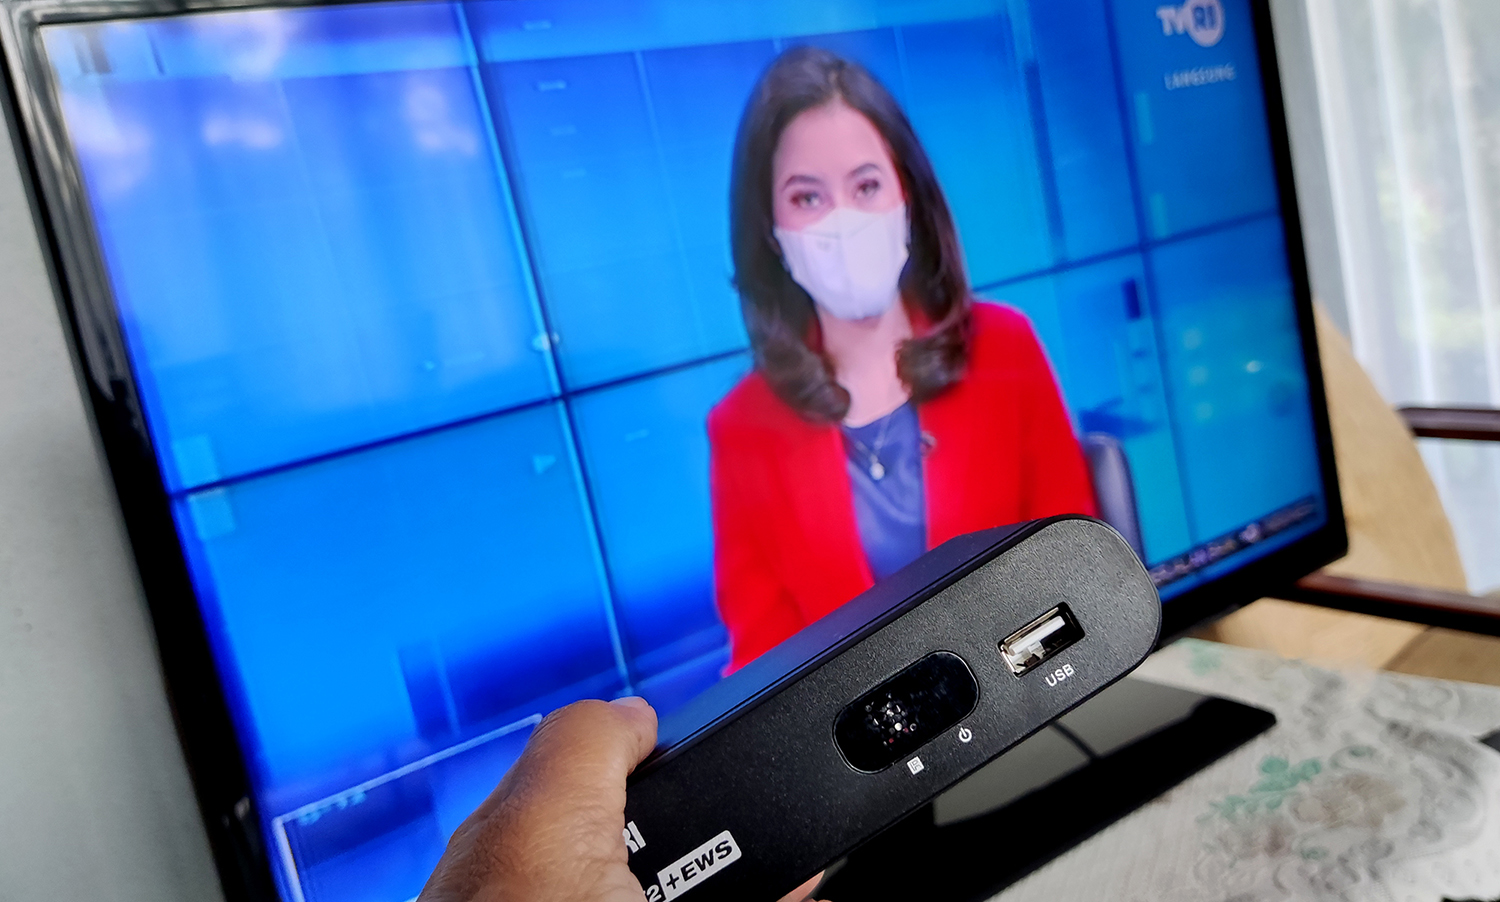 Siaran TV Analog berhenti, Pemkab Pemalang bagikan STB gratis untuk masyarakat